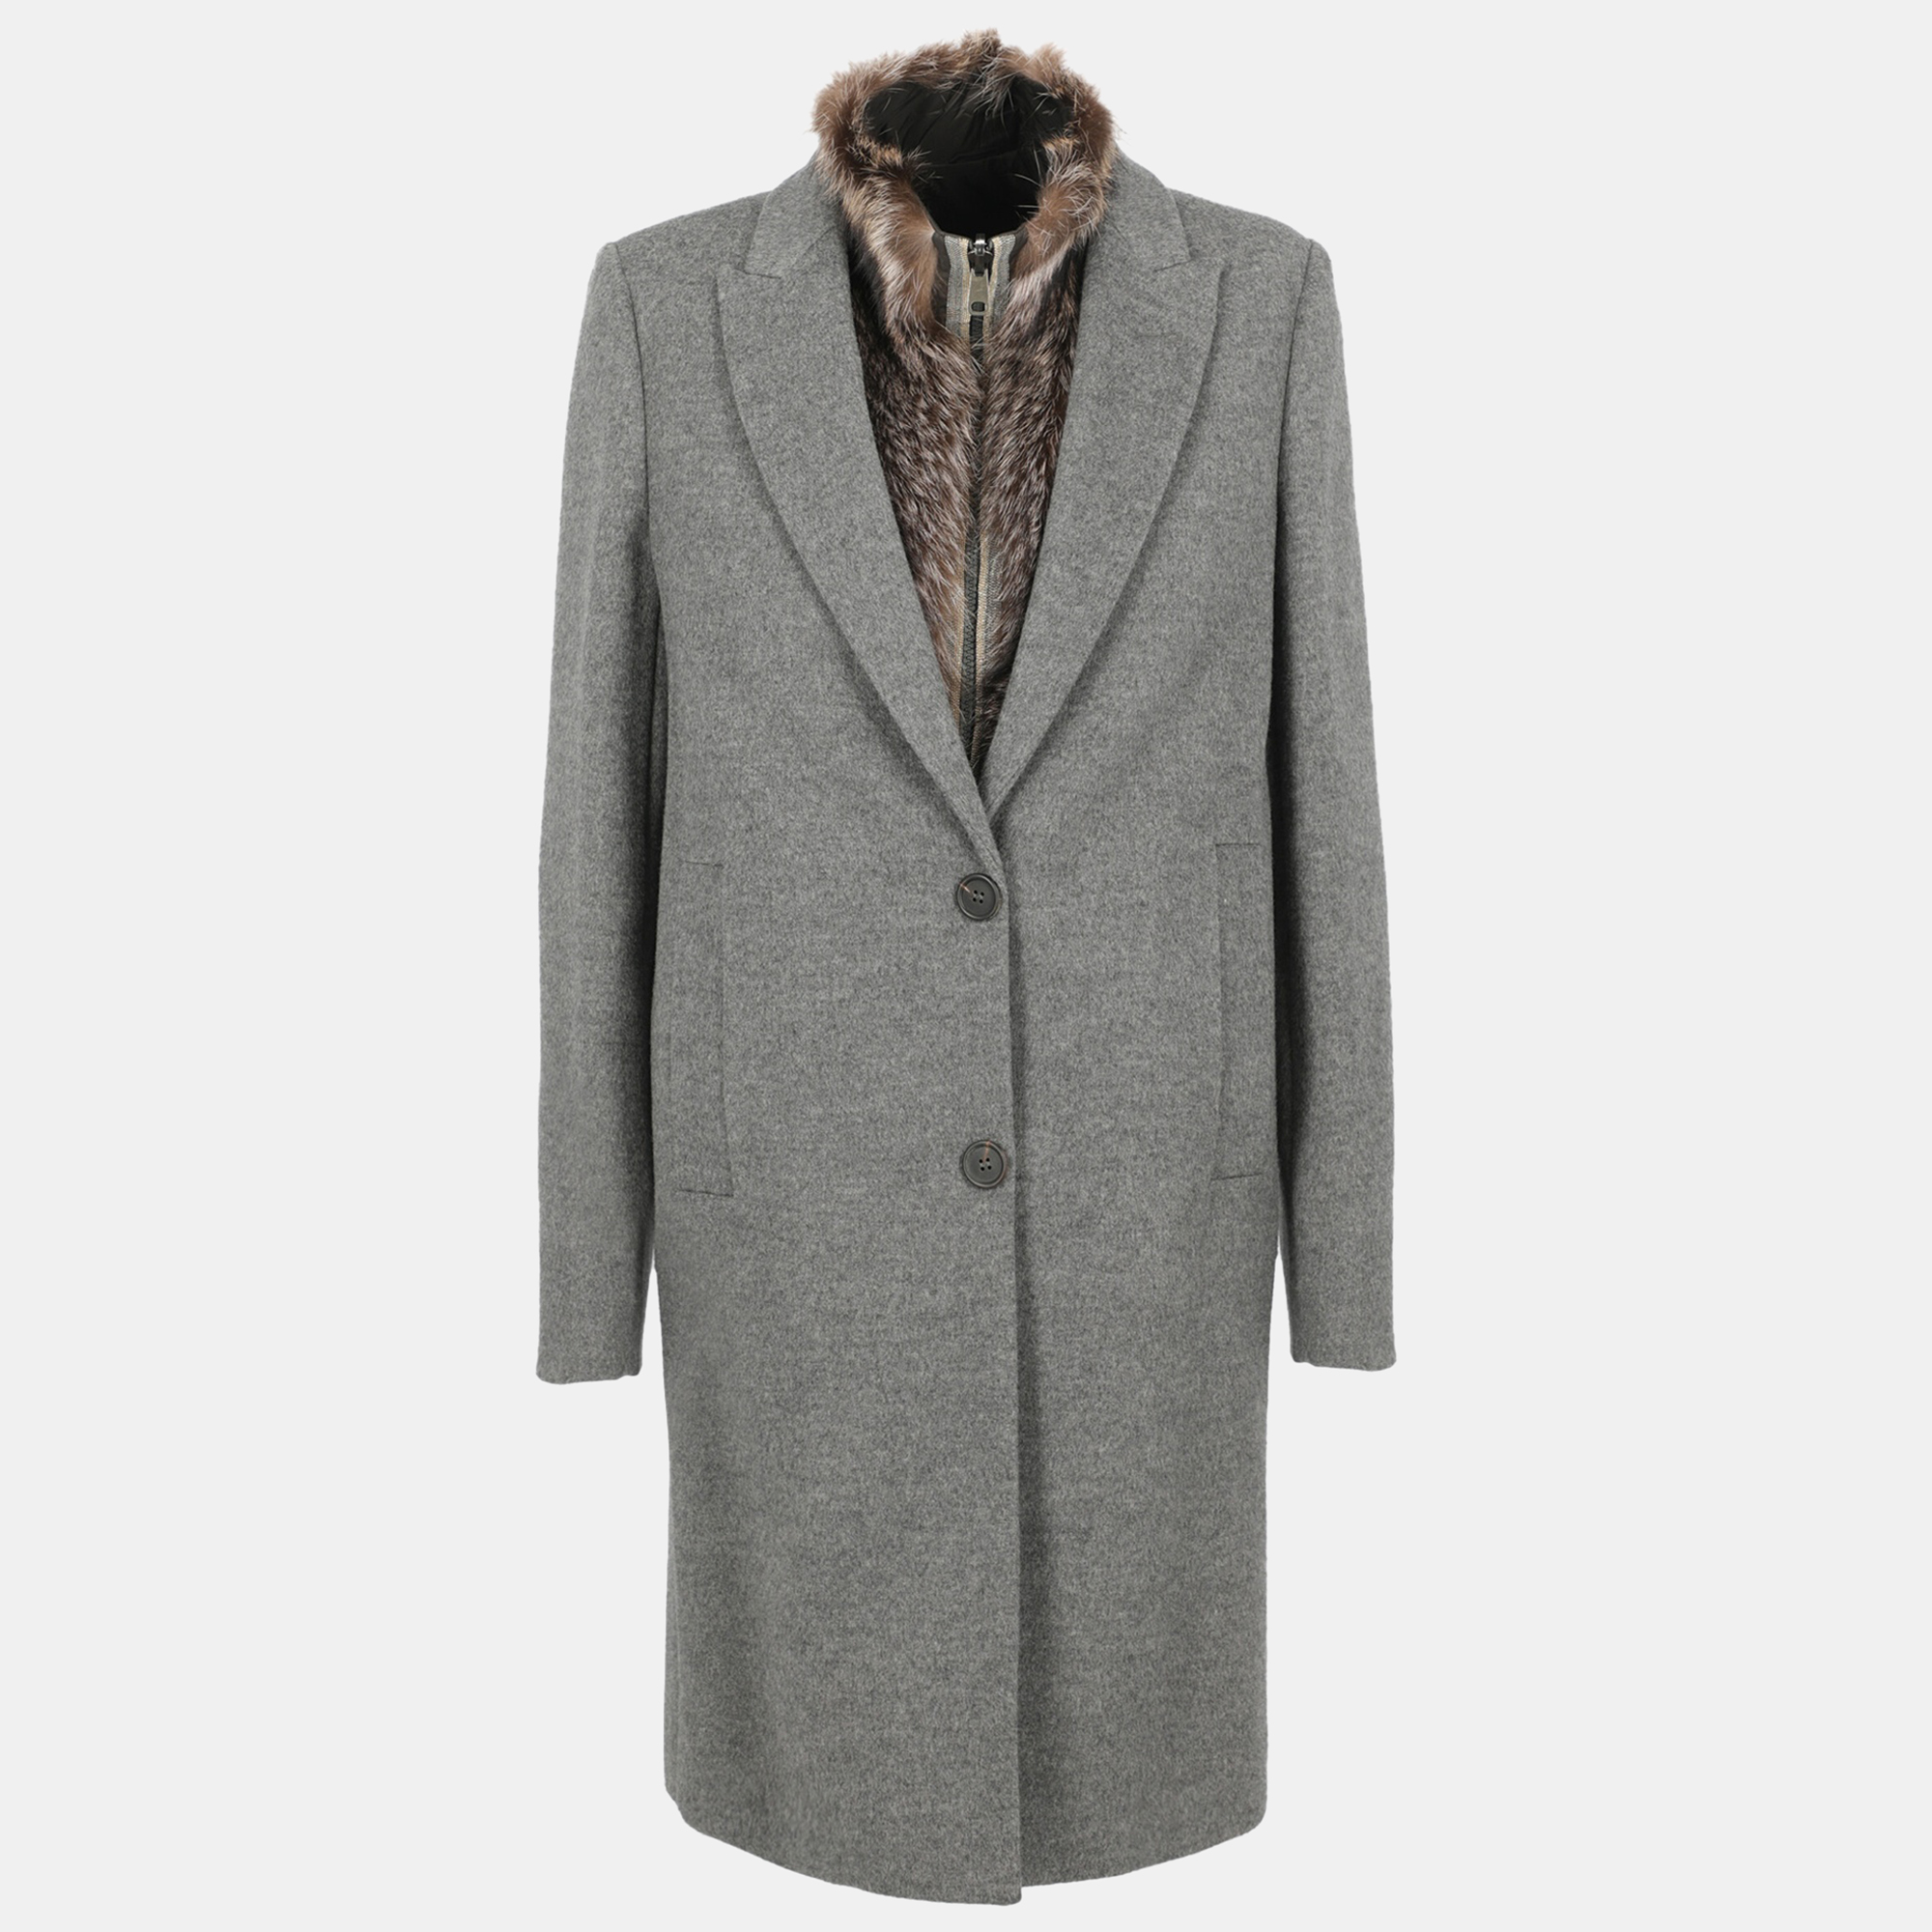 Brunello Cucinelli Women's Wool Single Breasted Coat - Grey - M